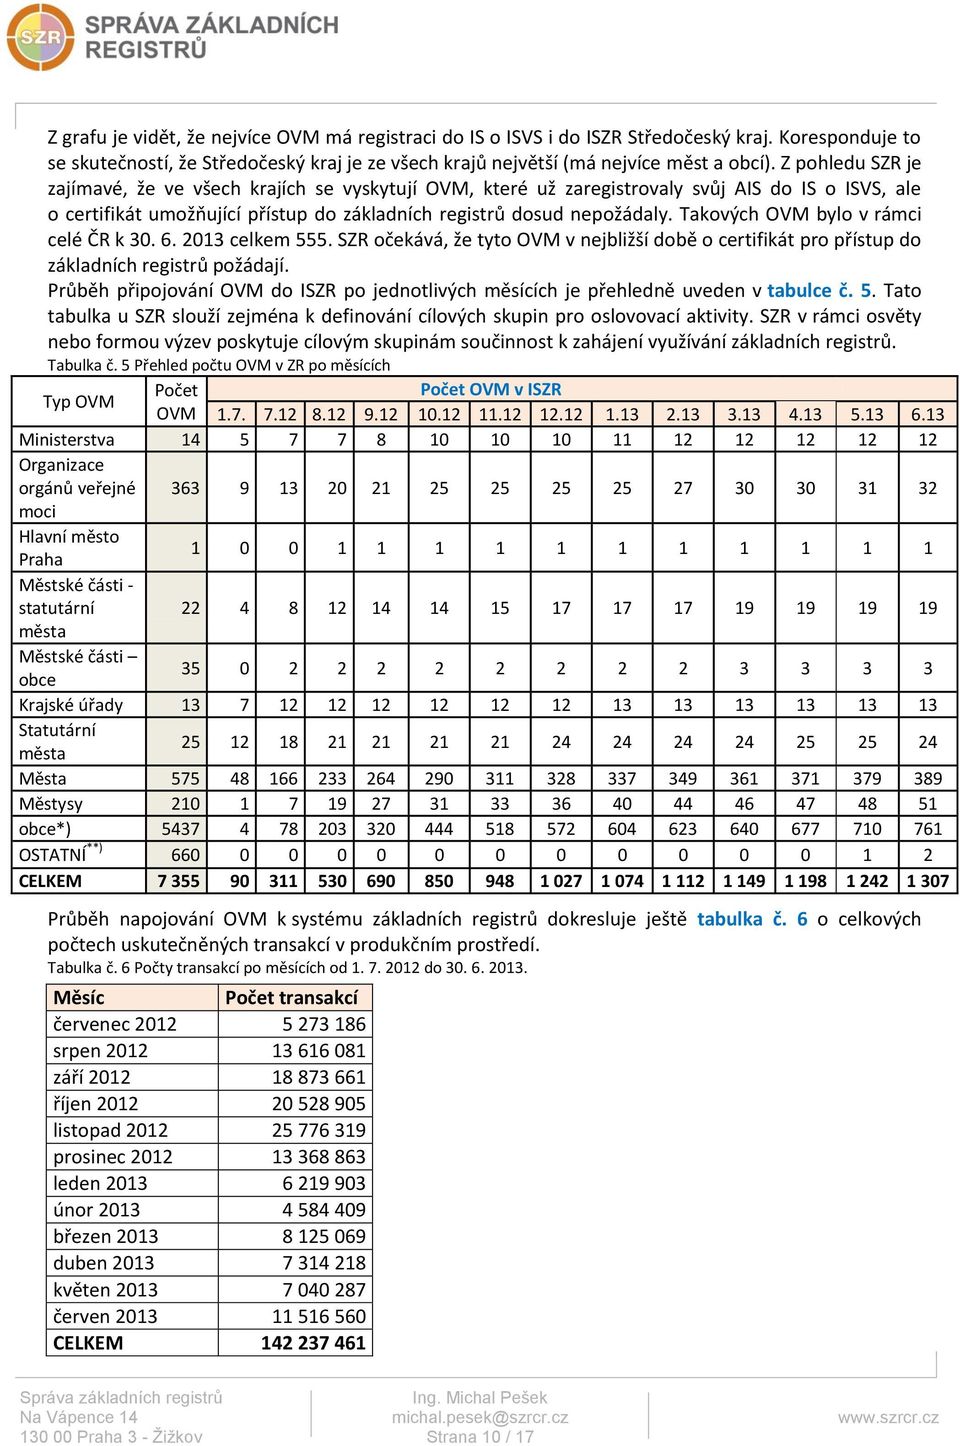 Takových OVM bylo v rámci celé ČR k 30. 6. 2013 celkem 555. SZR očekává, že tyto OVM v nejbližší době o certifikát pro přístup do základních registrů požádají.